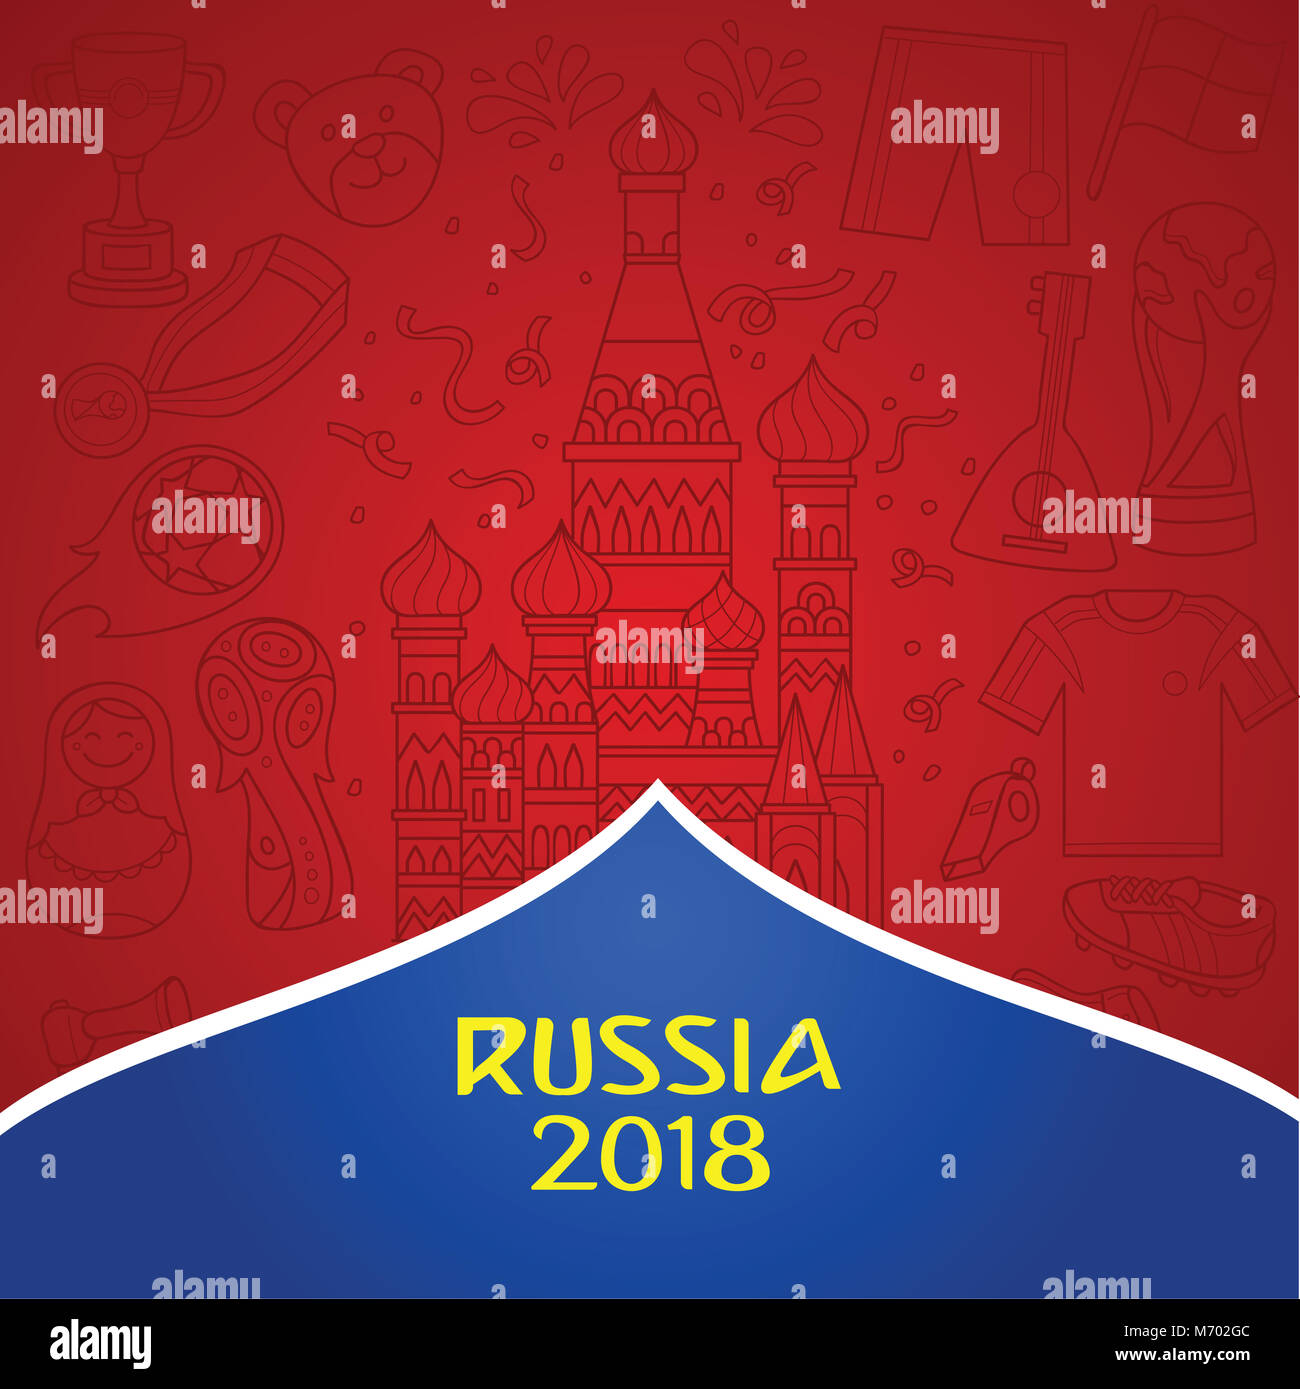 Russische 2018 Wm Hintergrund mit dominanten rot Farbe. Doddle Abbildung der russischen Objekt und Kultur als Hintergrund. Stockfoto